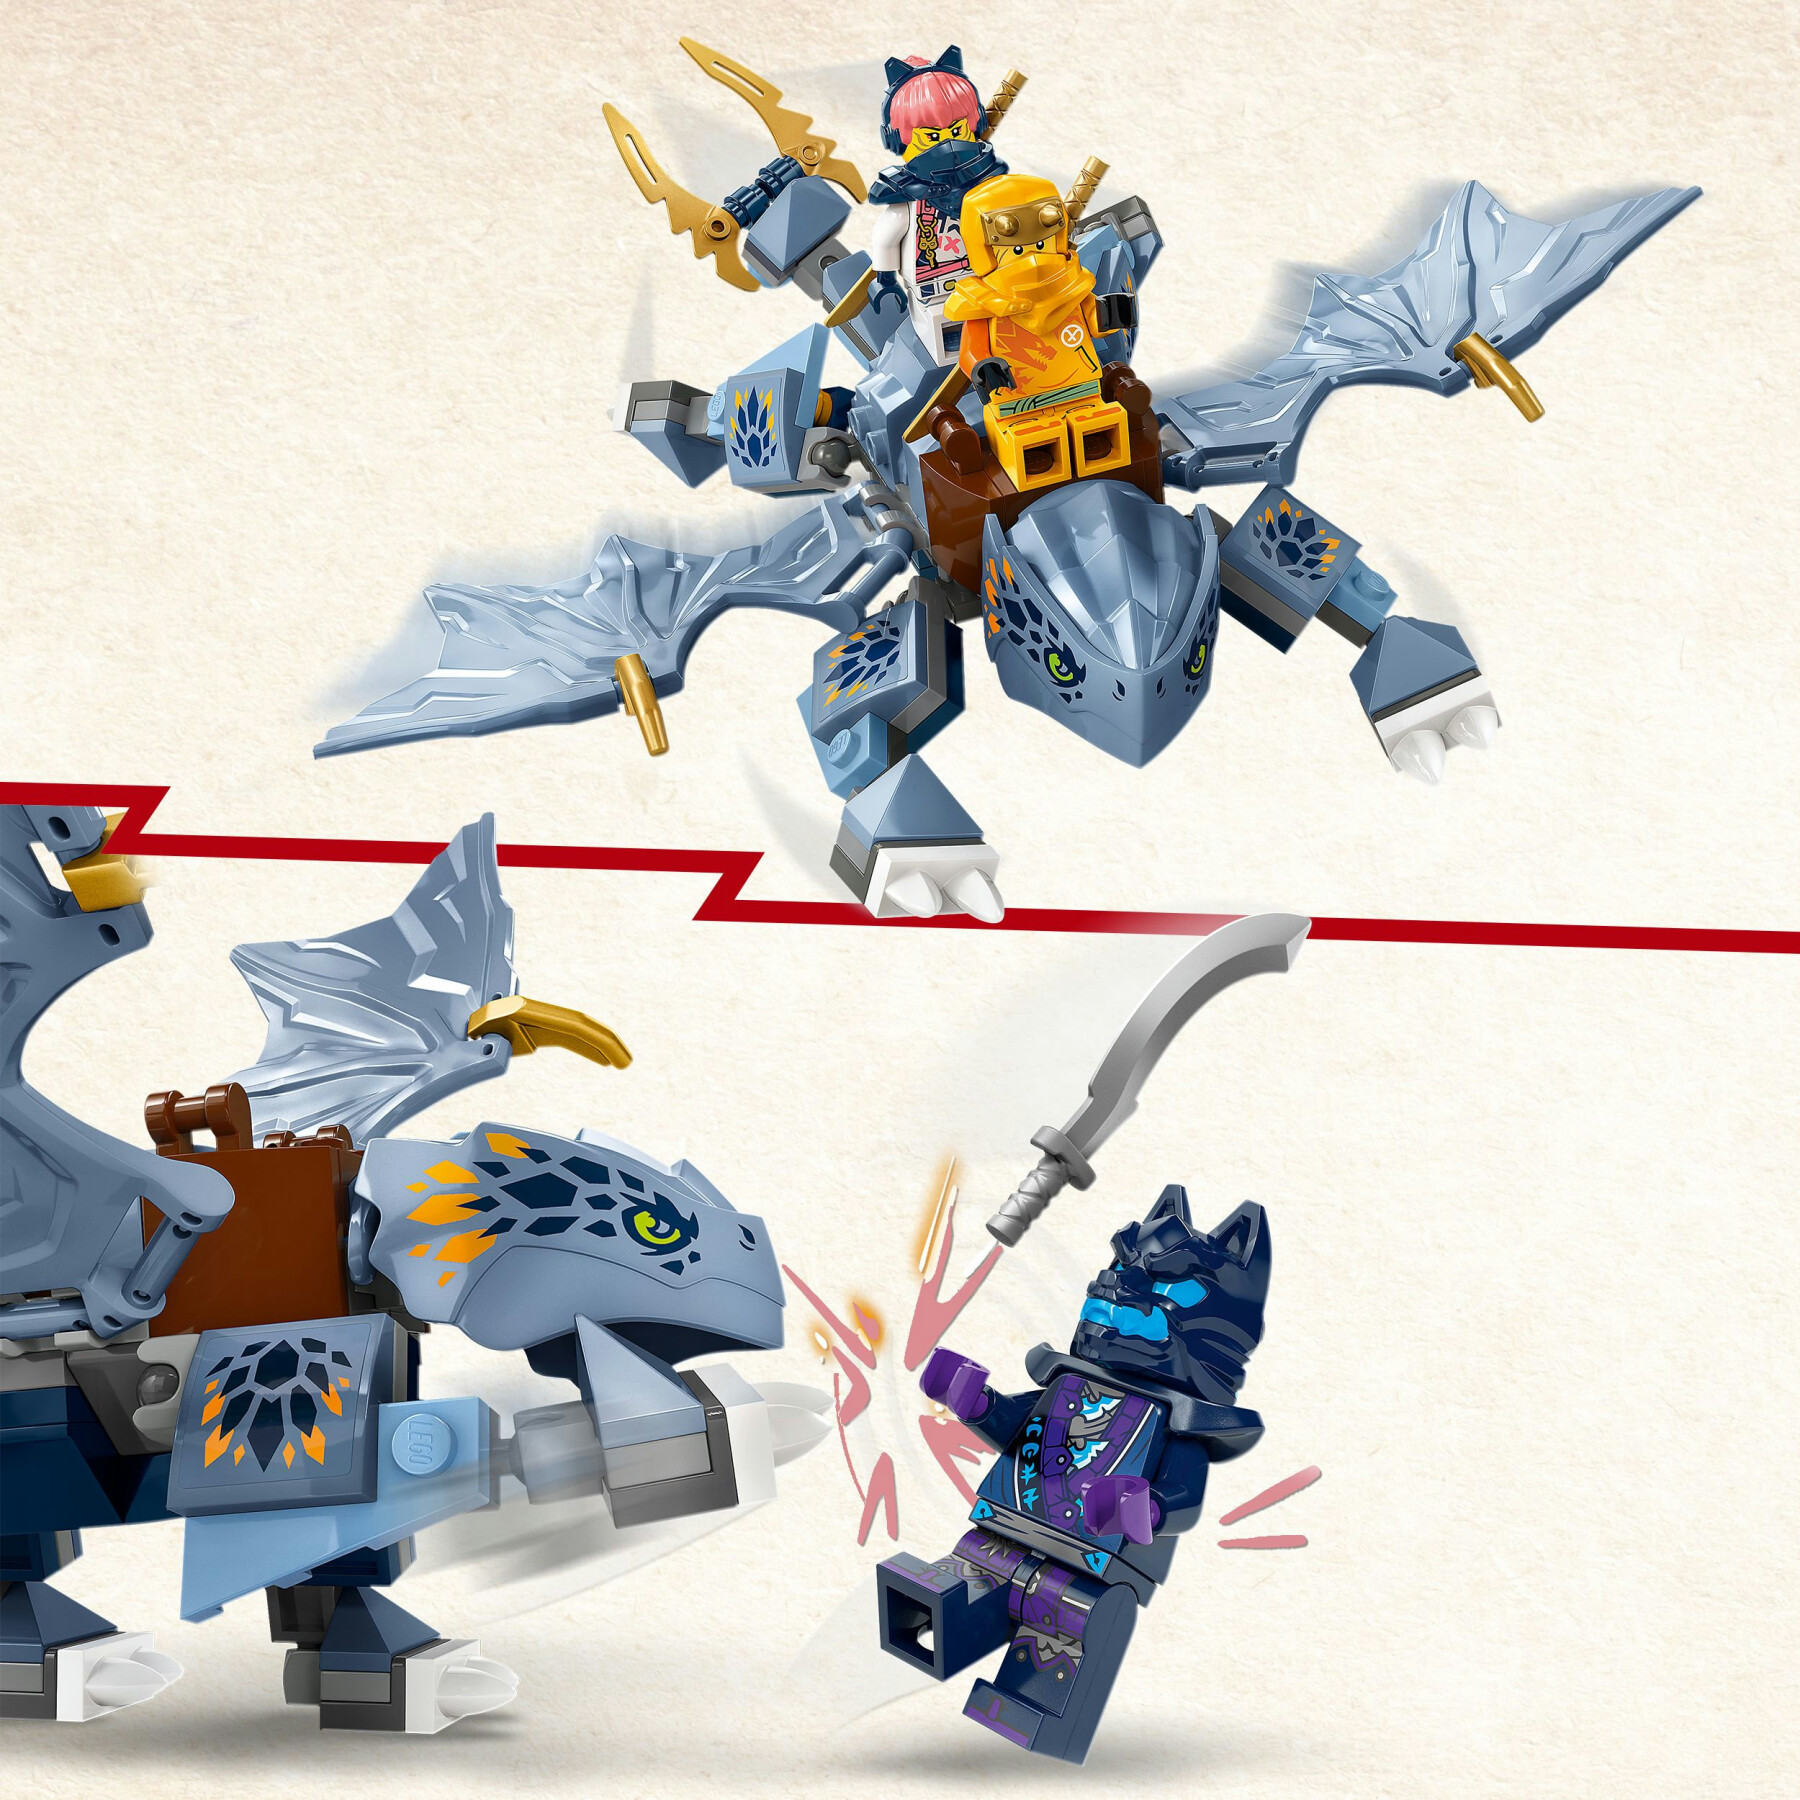 Lego ninjago 71810 draghetto riyu, modellino da costruire di drago giocattolo con 3 minifigure, giochi per bambini di 6+ anni - LEGO NINJAGO